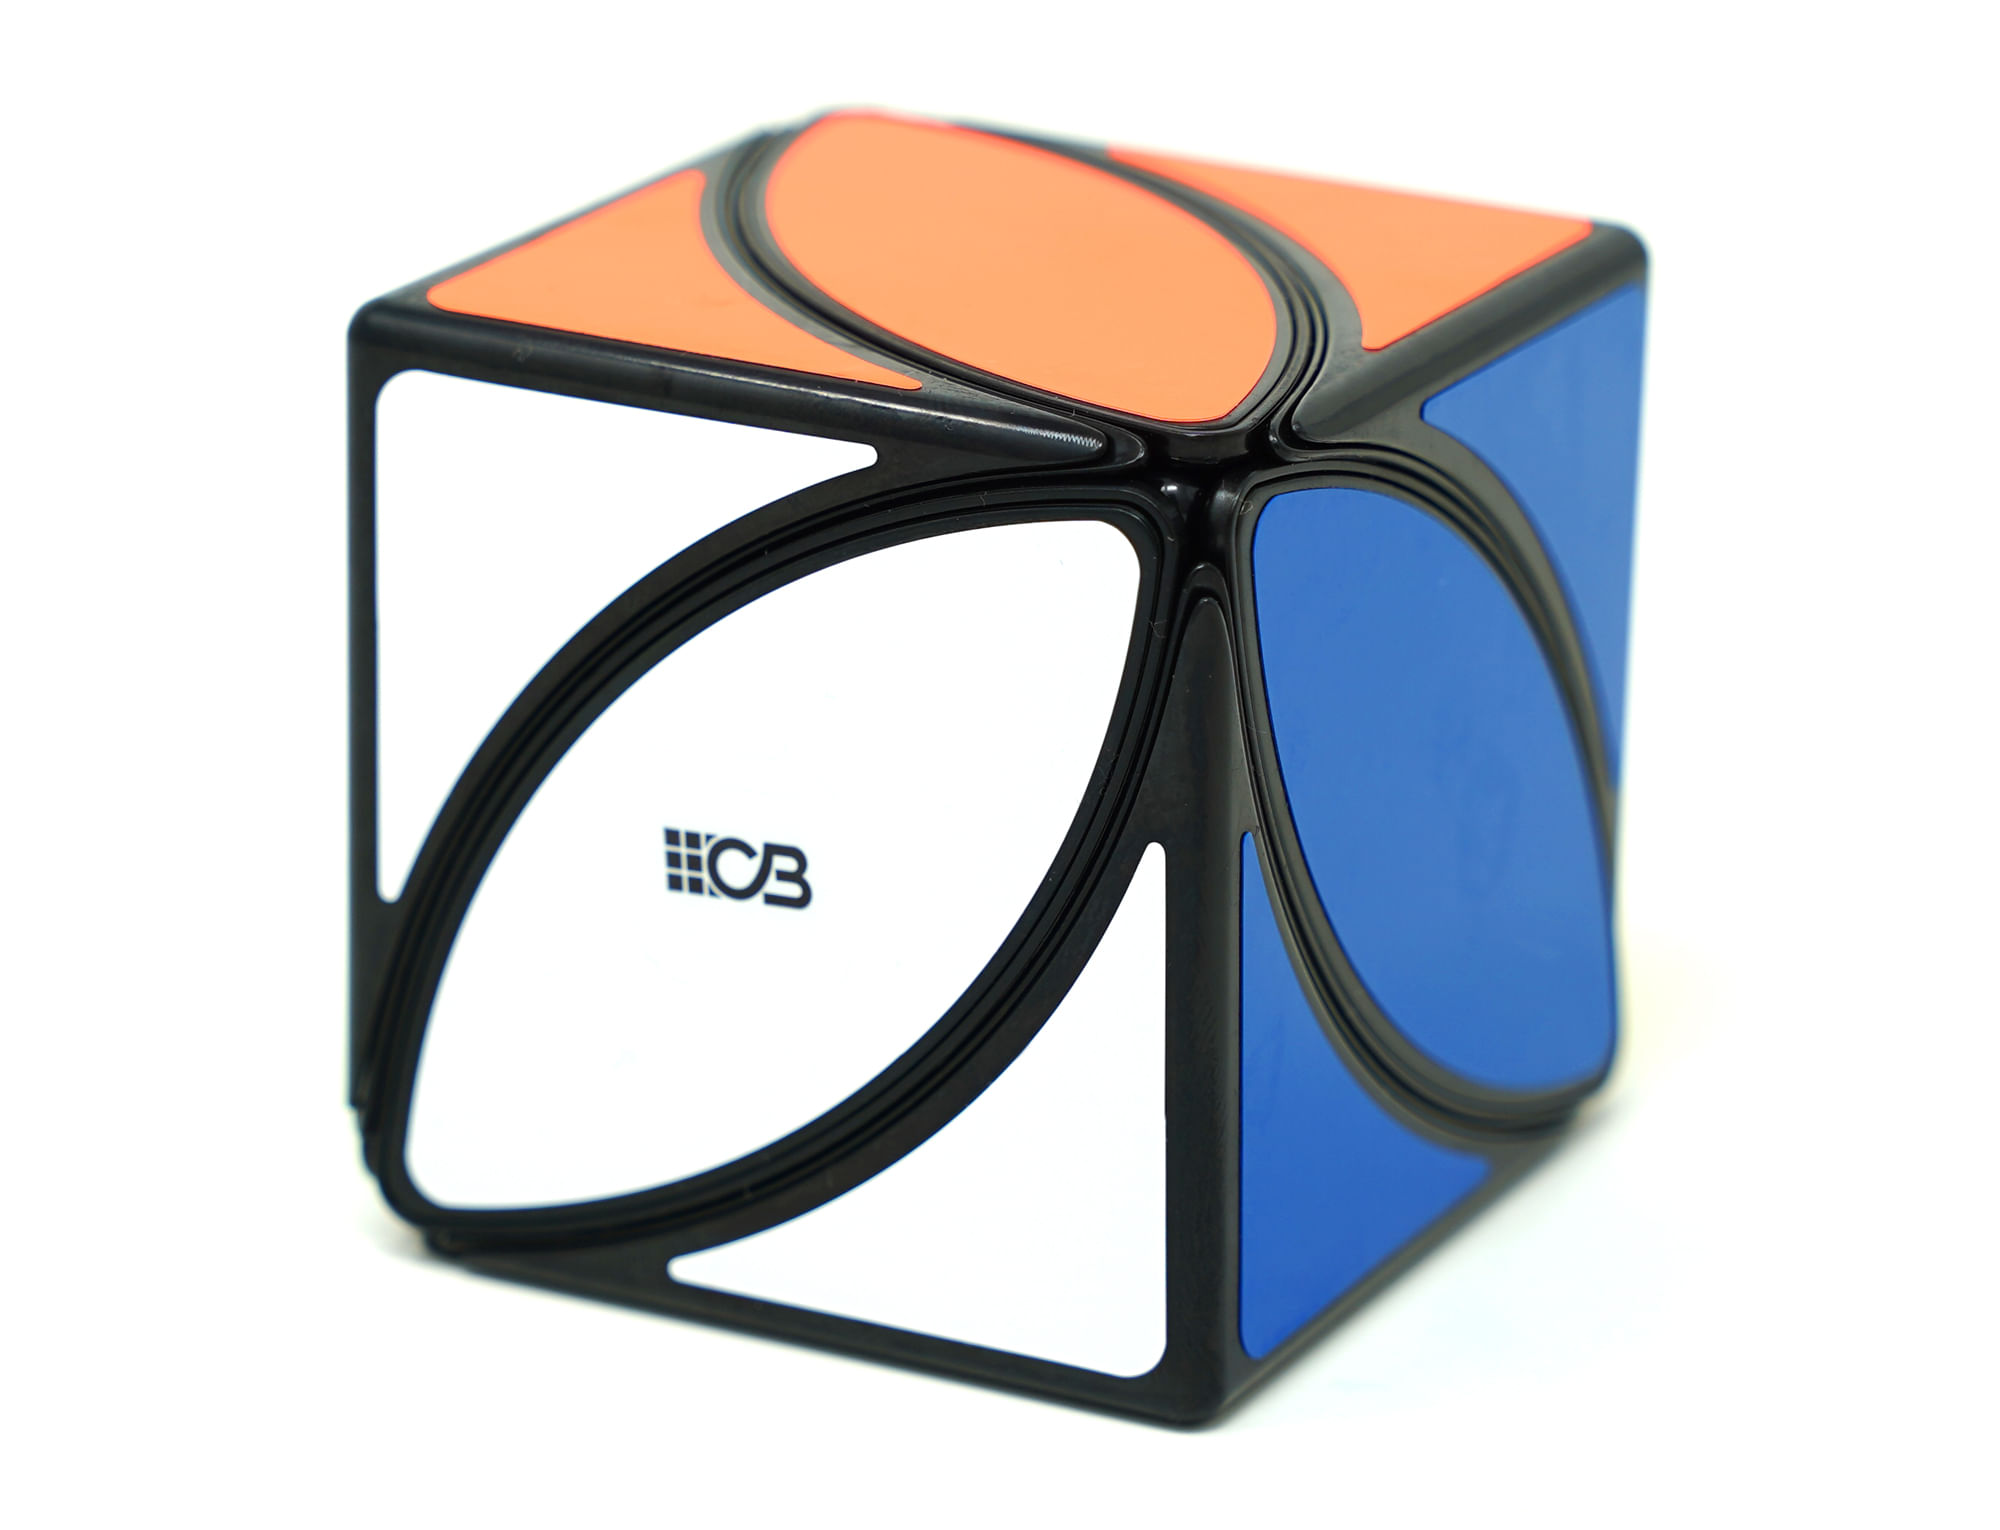 Cubo Mágico Havan - HBR0068